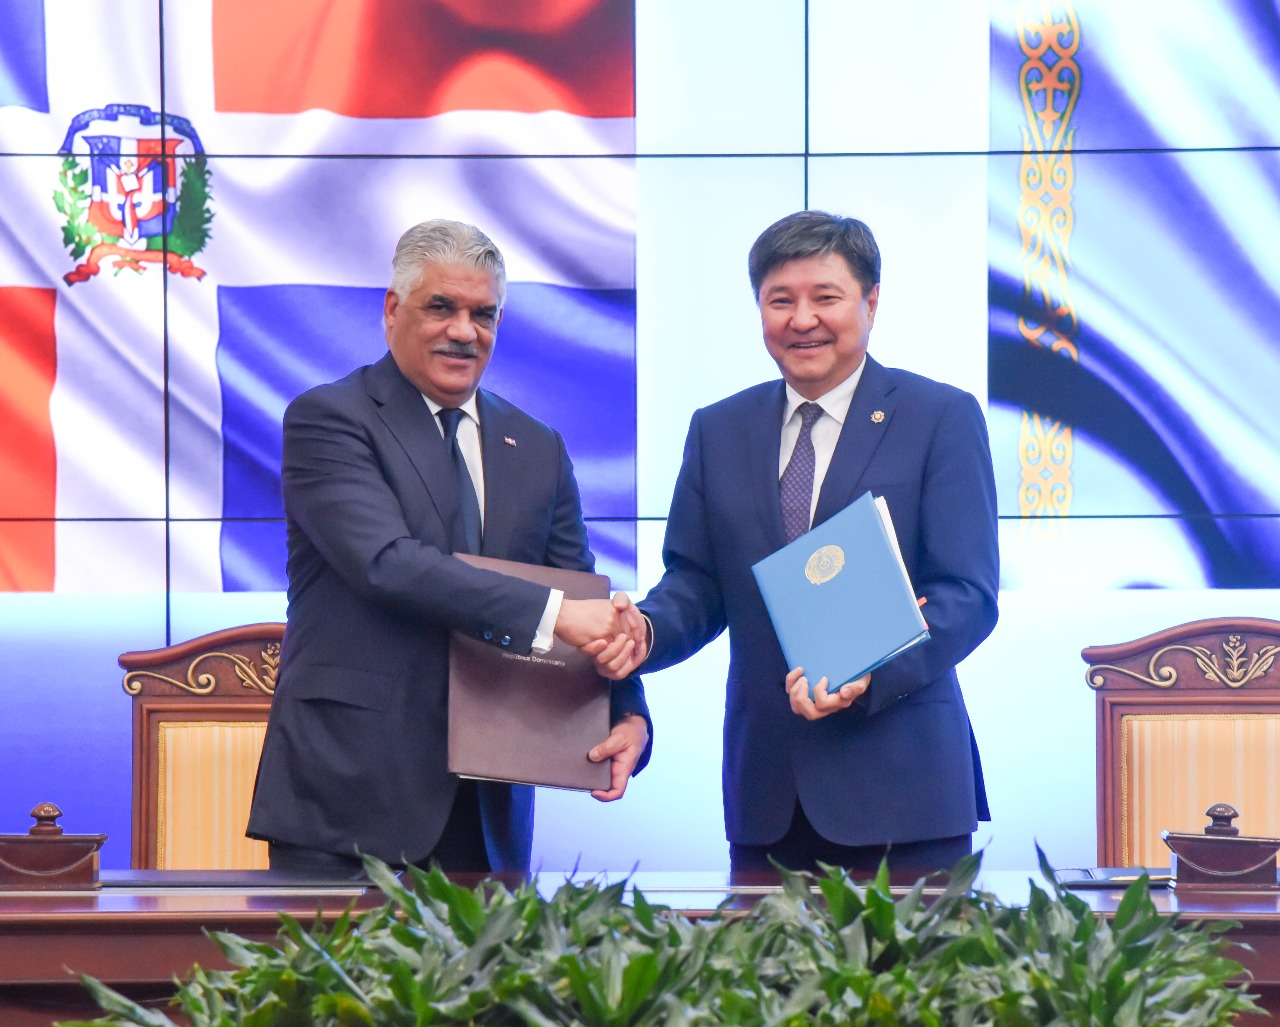  República Dominicana y Kazajistán firman protocolo de cooperación interinstitucional